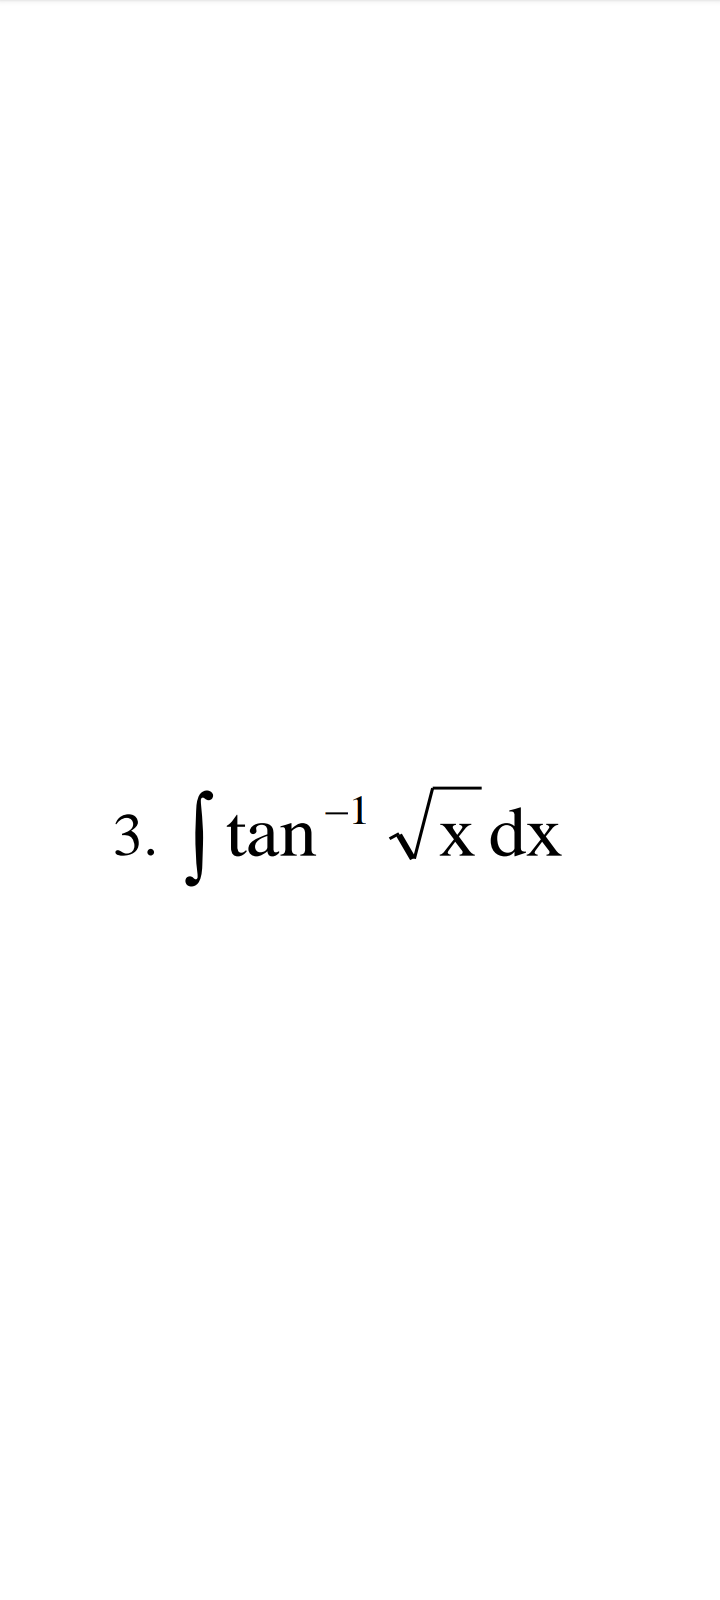 Stan-¹ √x dx
3.